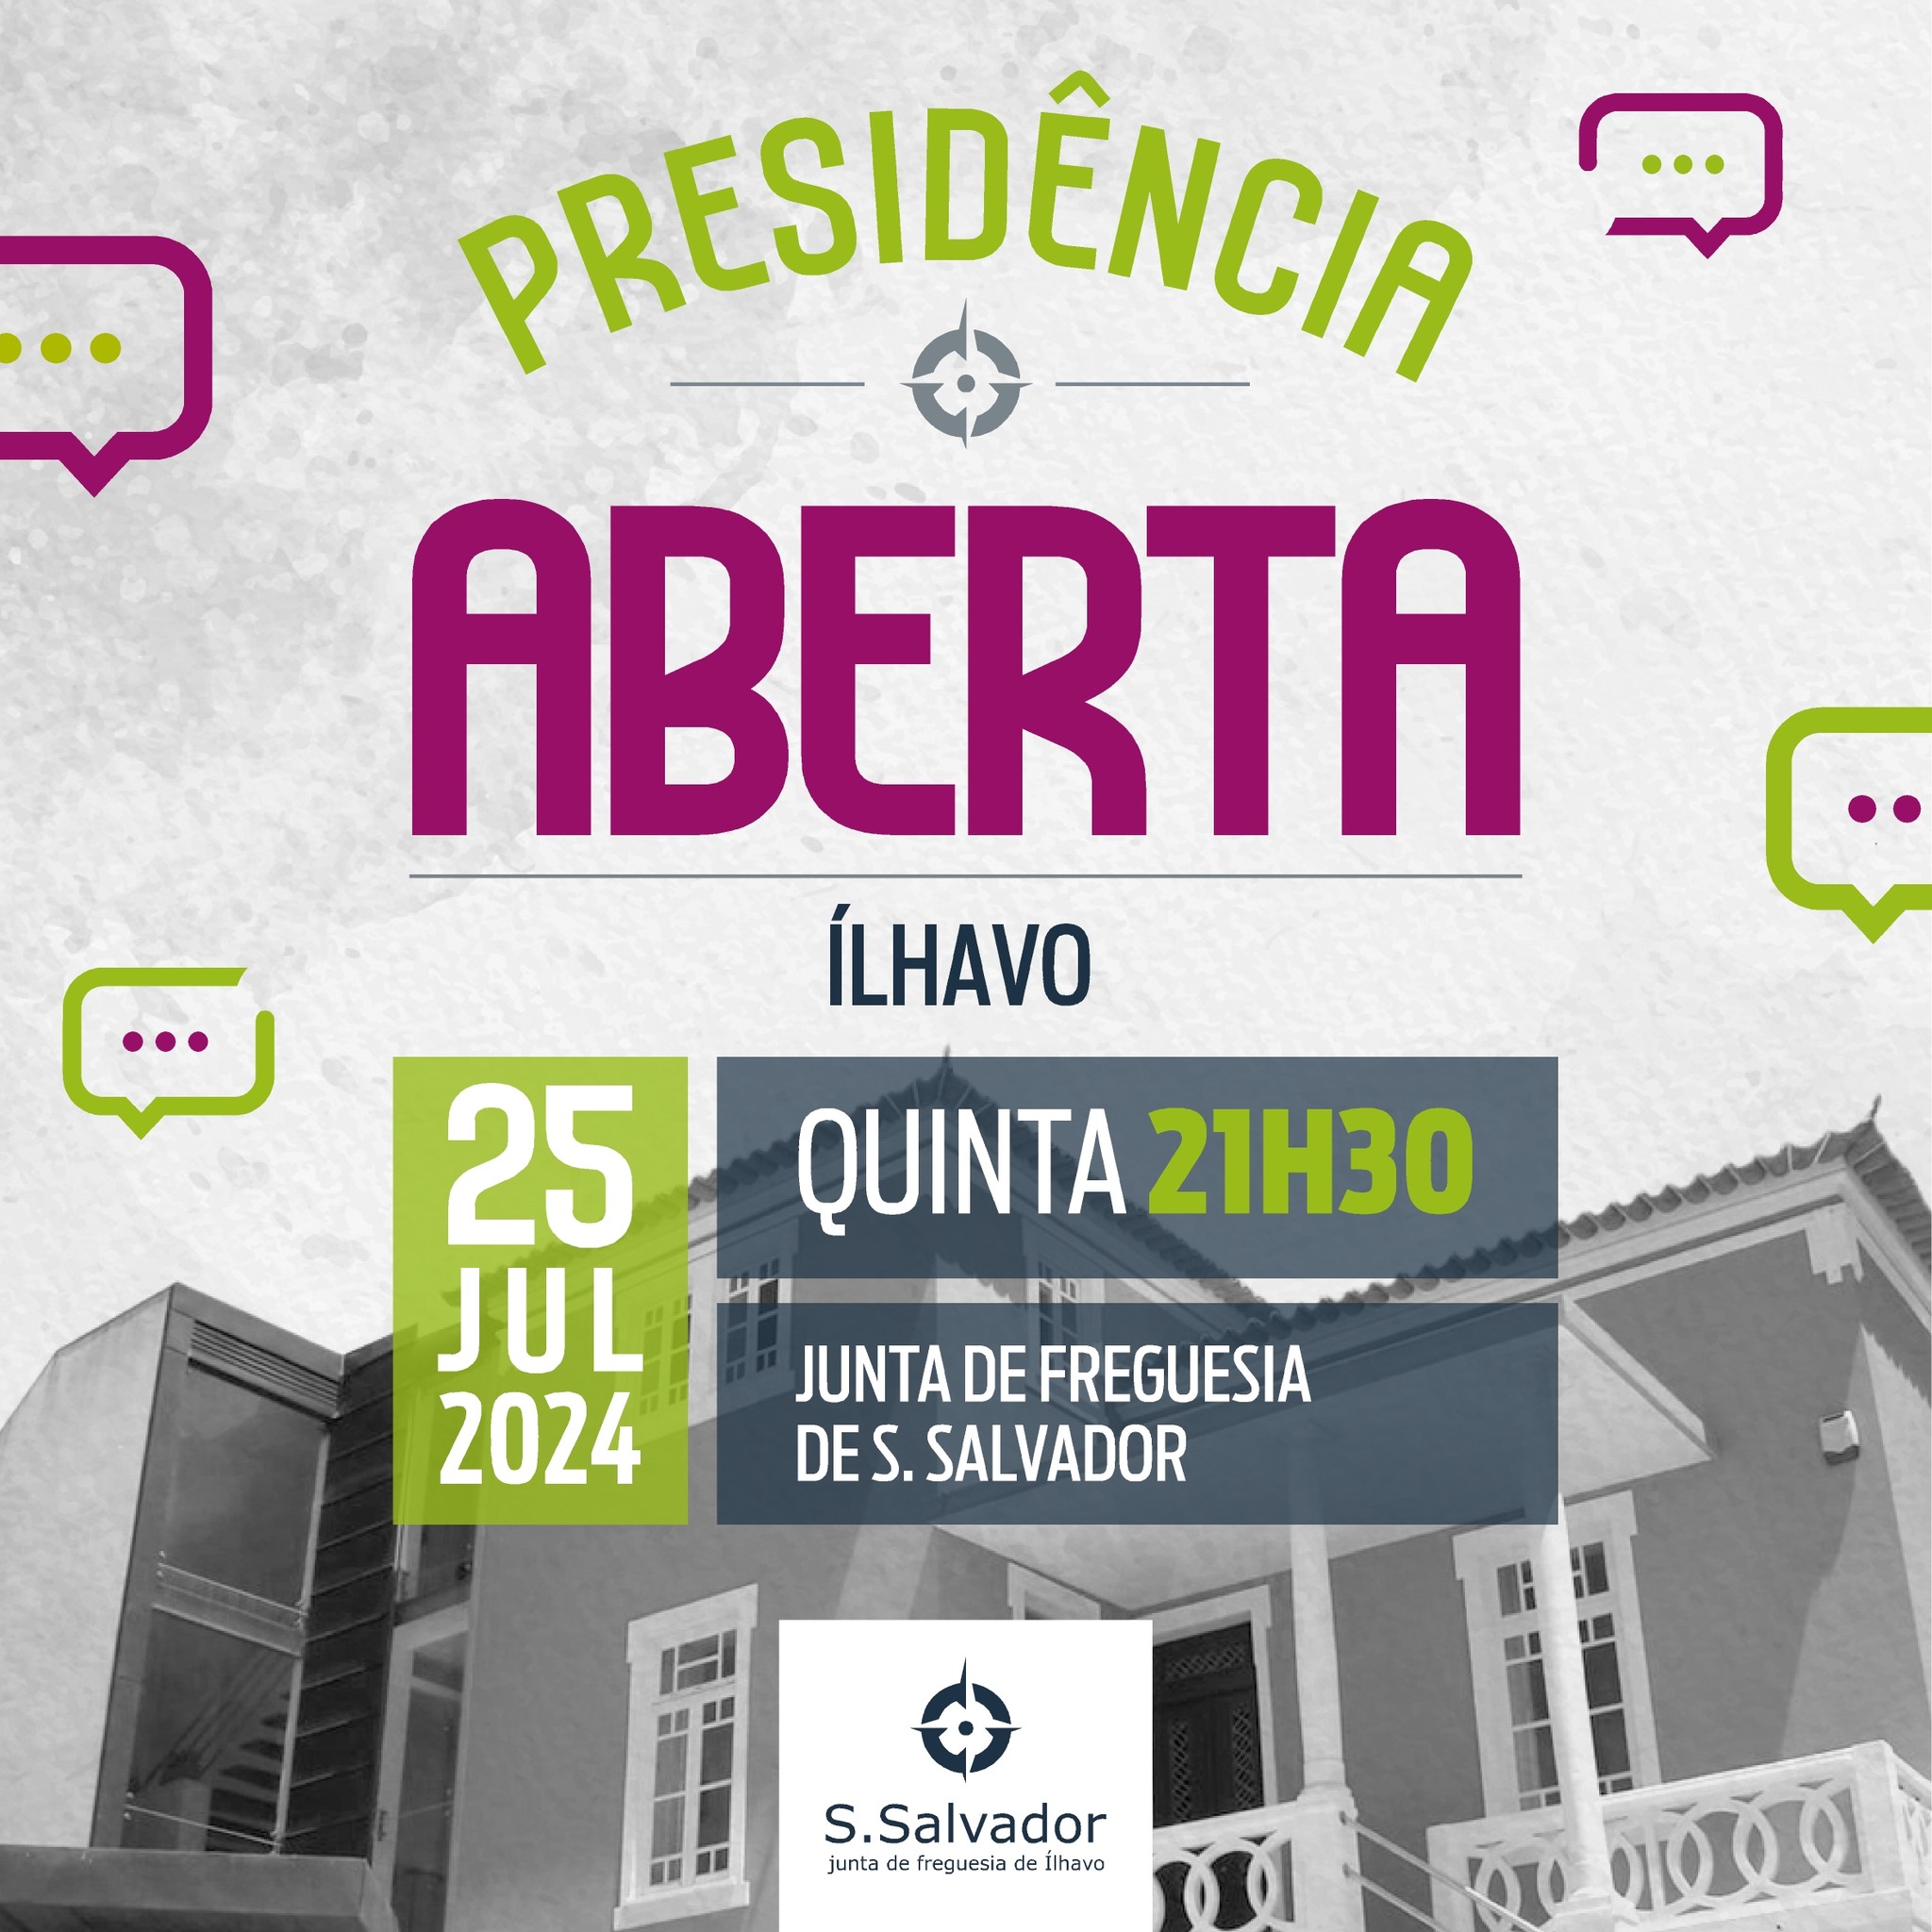 Junta de Freguesia de São Salvador promove Presidência Aberta amanhã